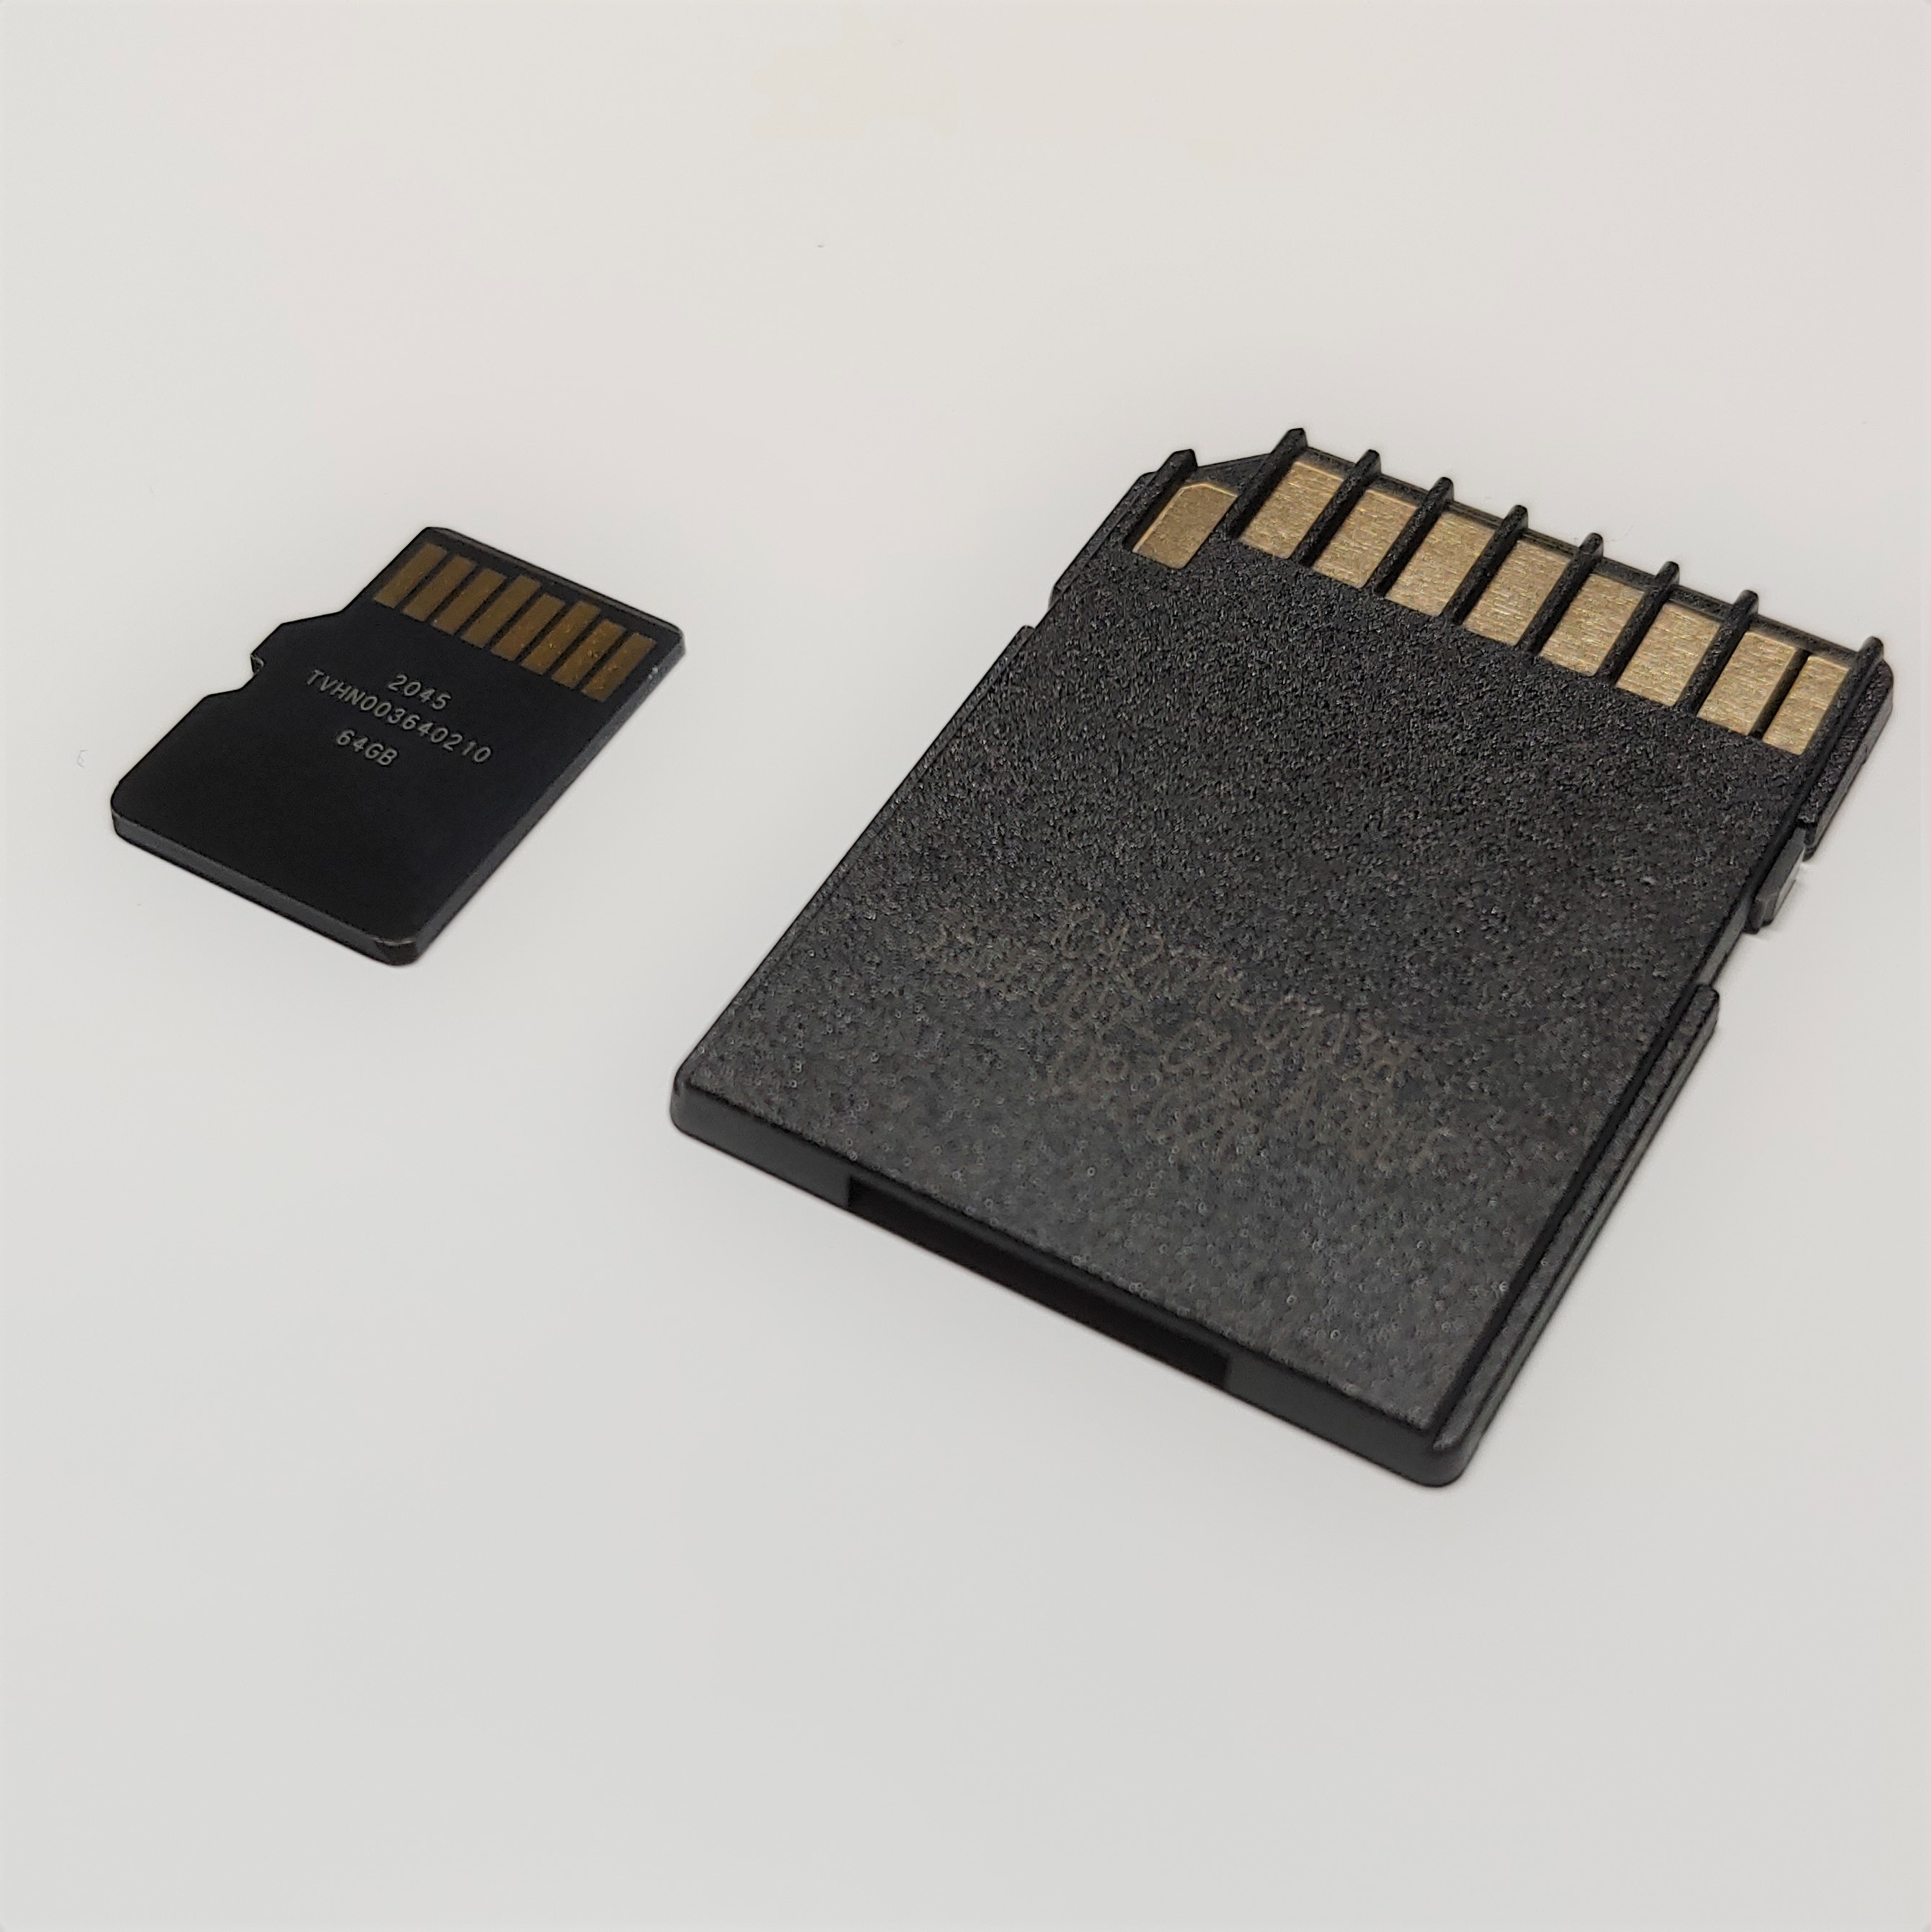 MEMORIA MICRO SD 64 GB HIKVISION 92MB/S - Genius CT Computadoras